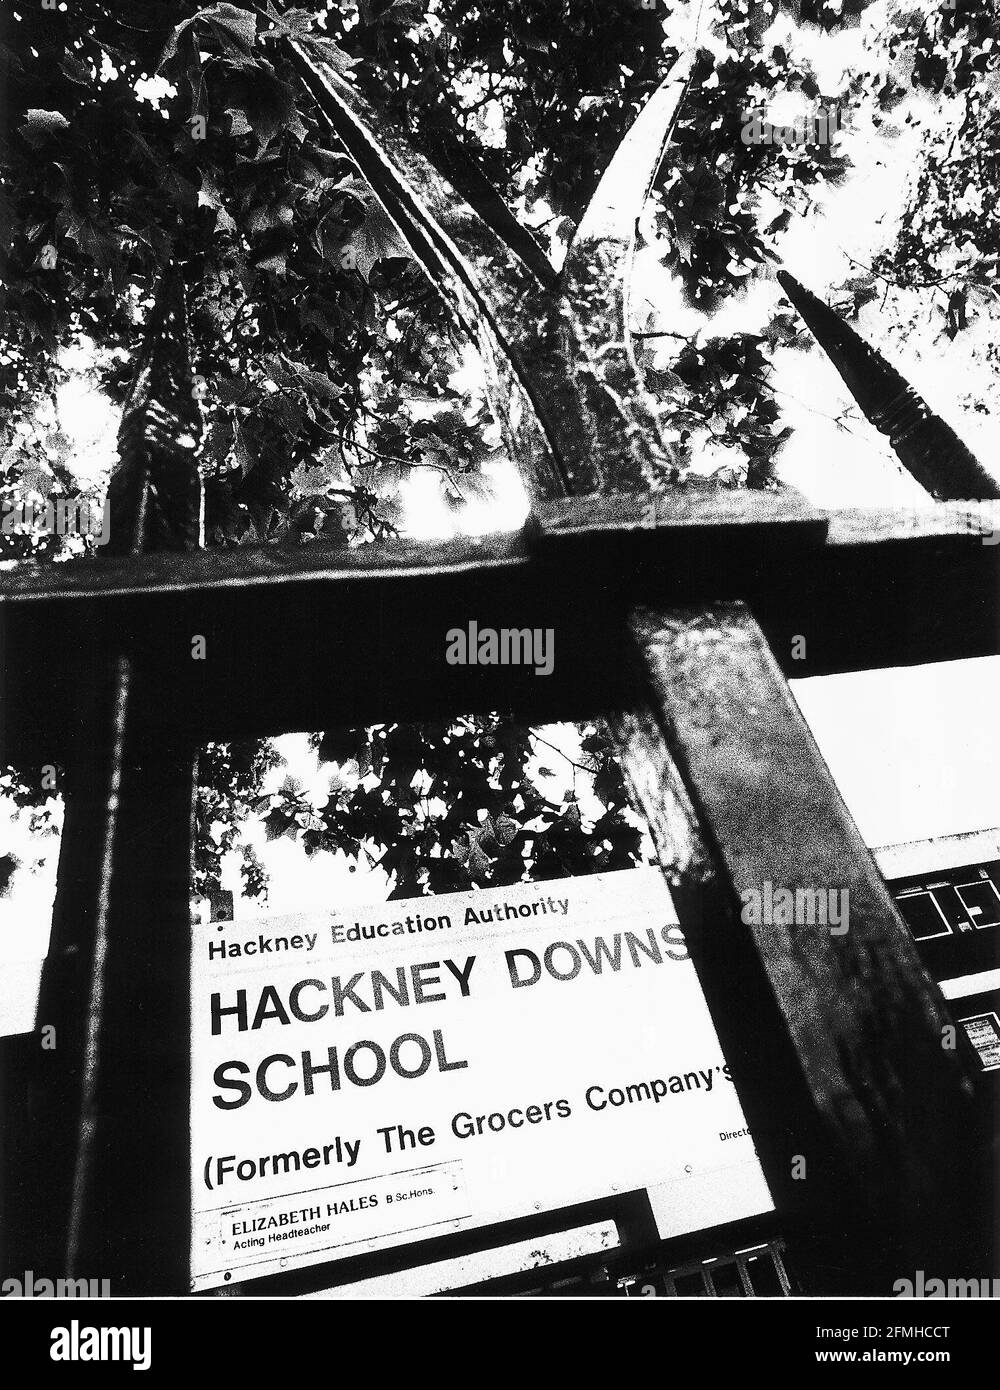 Hackney Downs School Die Erste Schule, In Der Die Regierung Ist Aufgrund von Bildungsergebnissen in EINER Sonderarbeitsgruppe eingesandt DBase Stockfoto